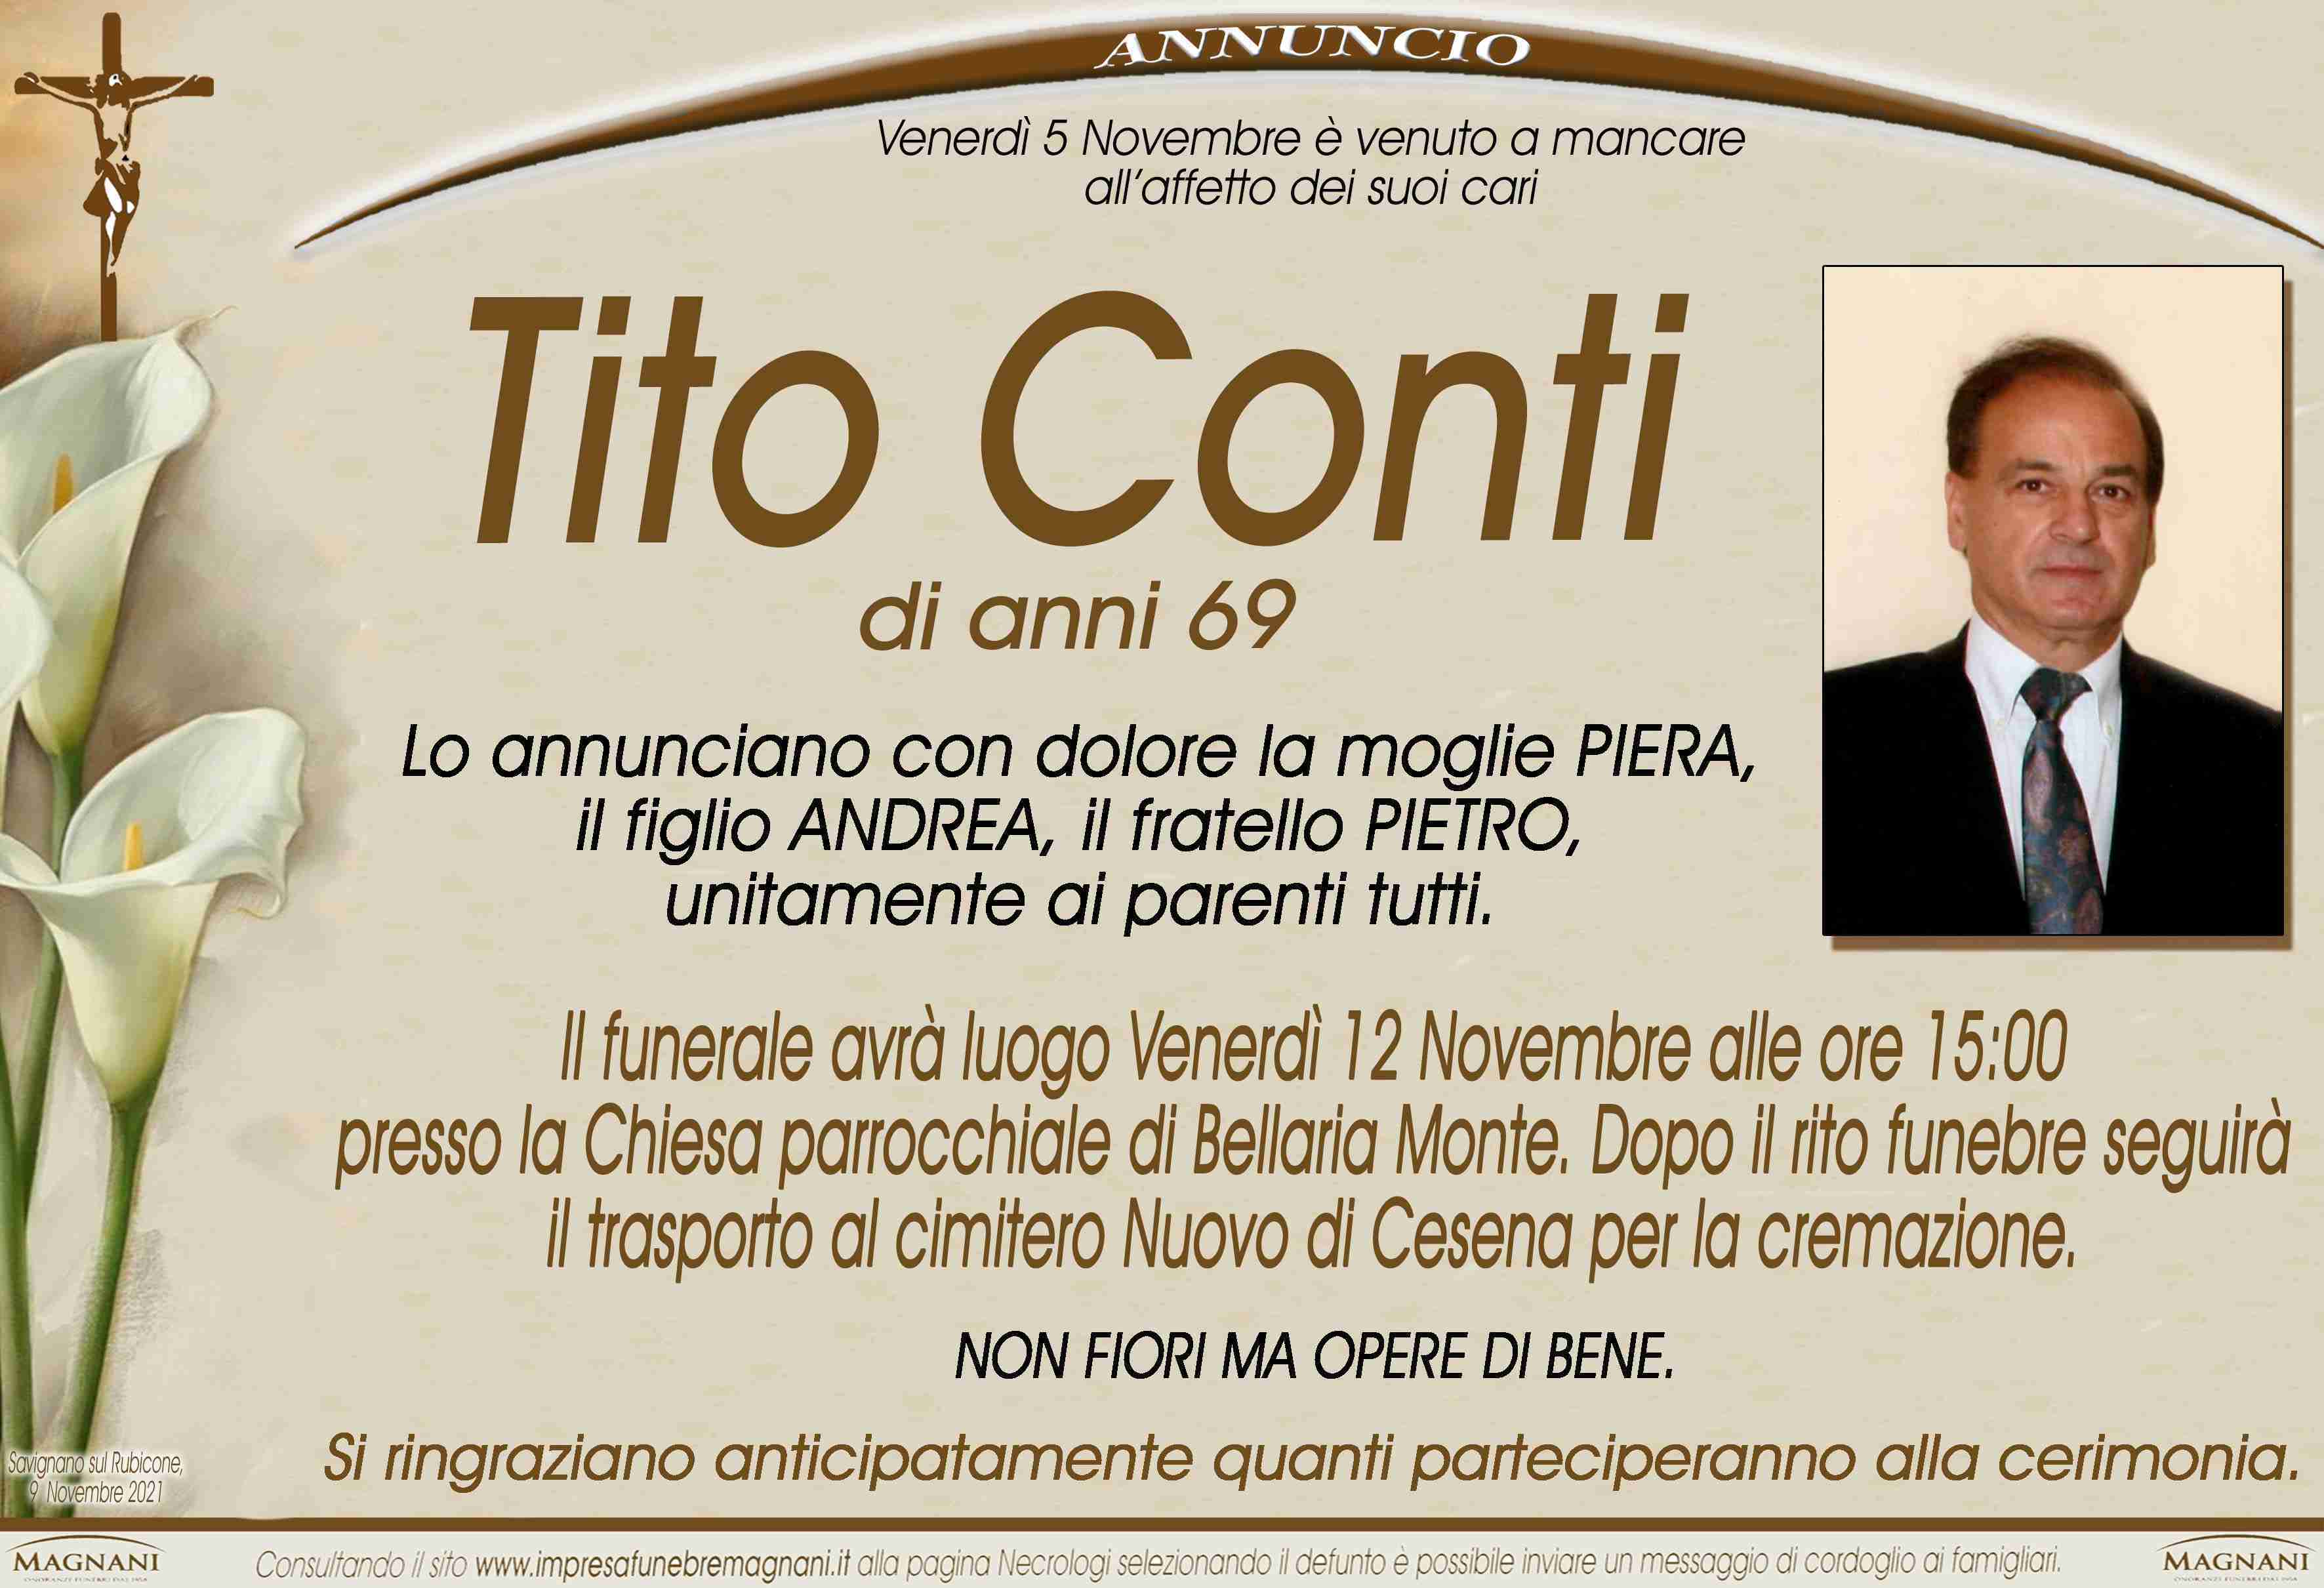 Tito Conti